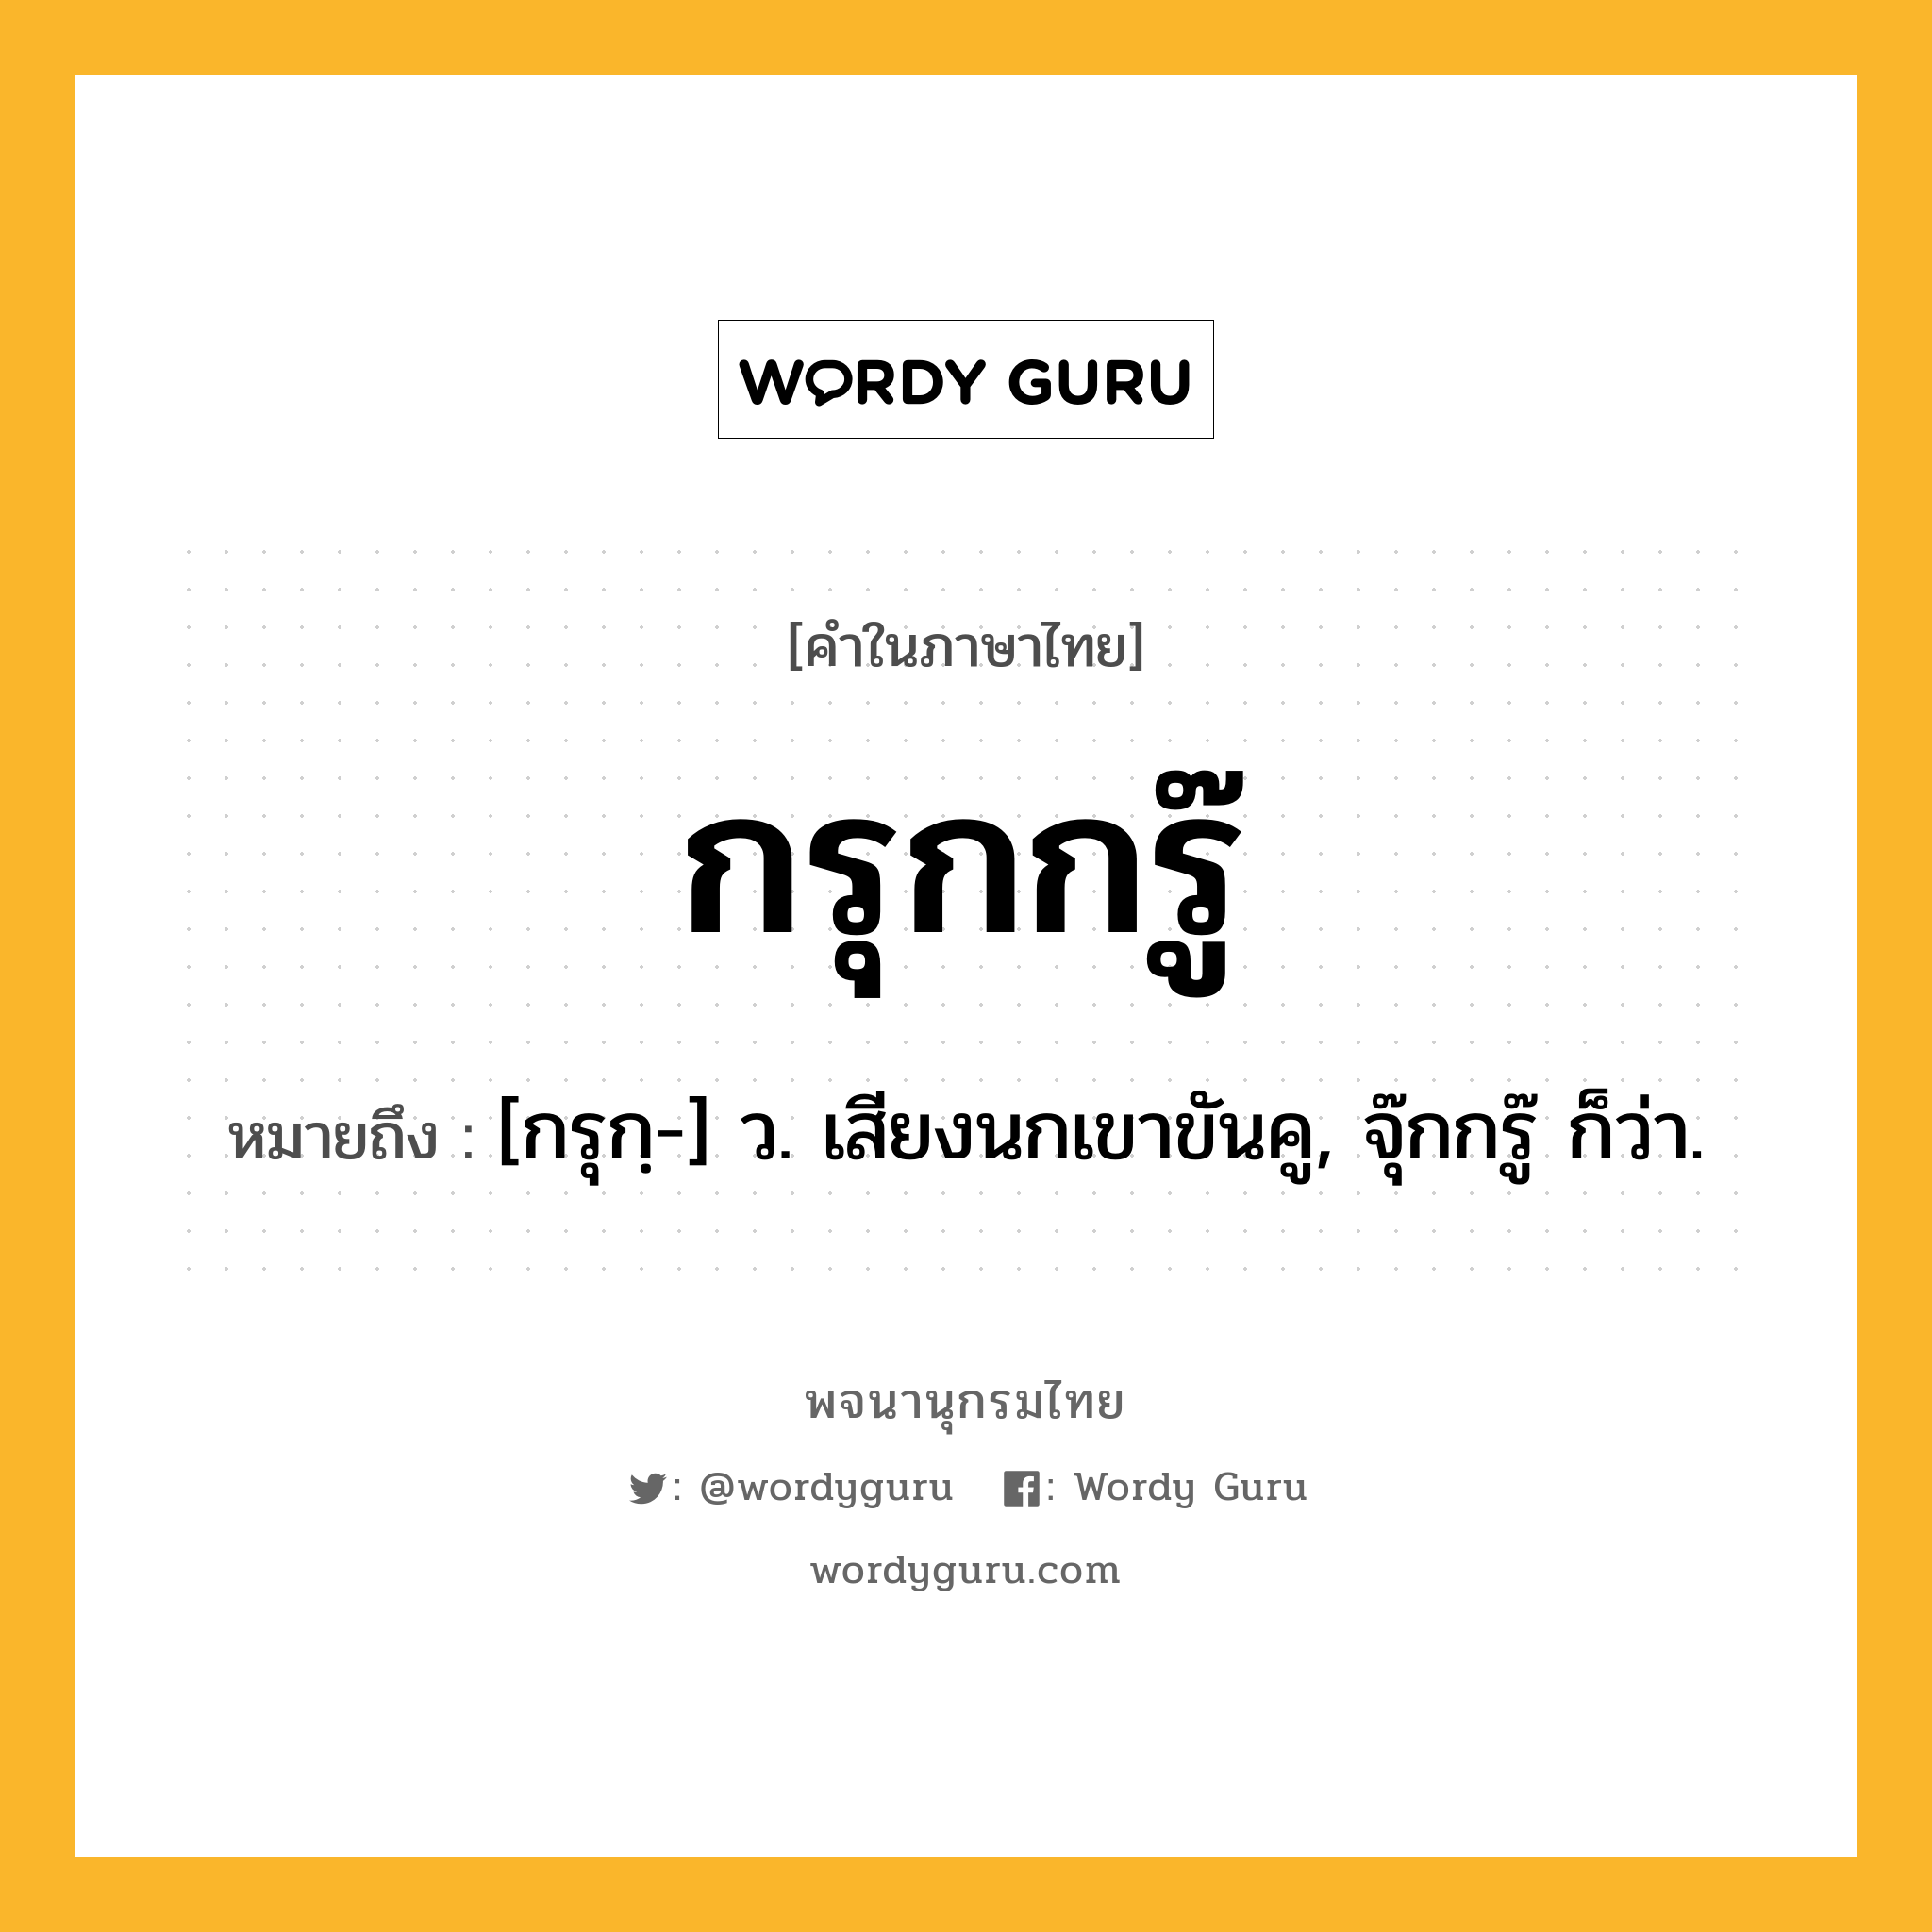 กรุกกรู๊ หมายถึงอะไร?, คำในภาษาไทย กรุกกรู๊ หมายถึง [กรุกฺ-] ว. เสียงนกเขาขันคู, จุ๊กกรู๊ ก็ว่า.